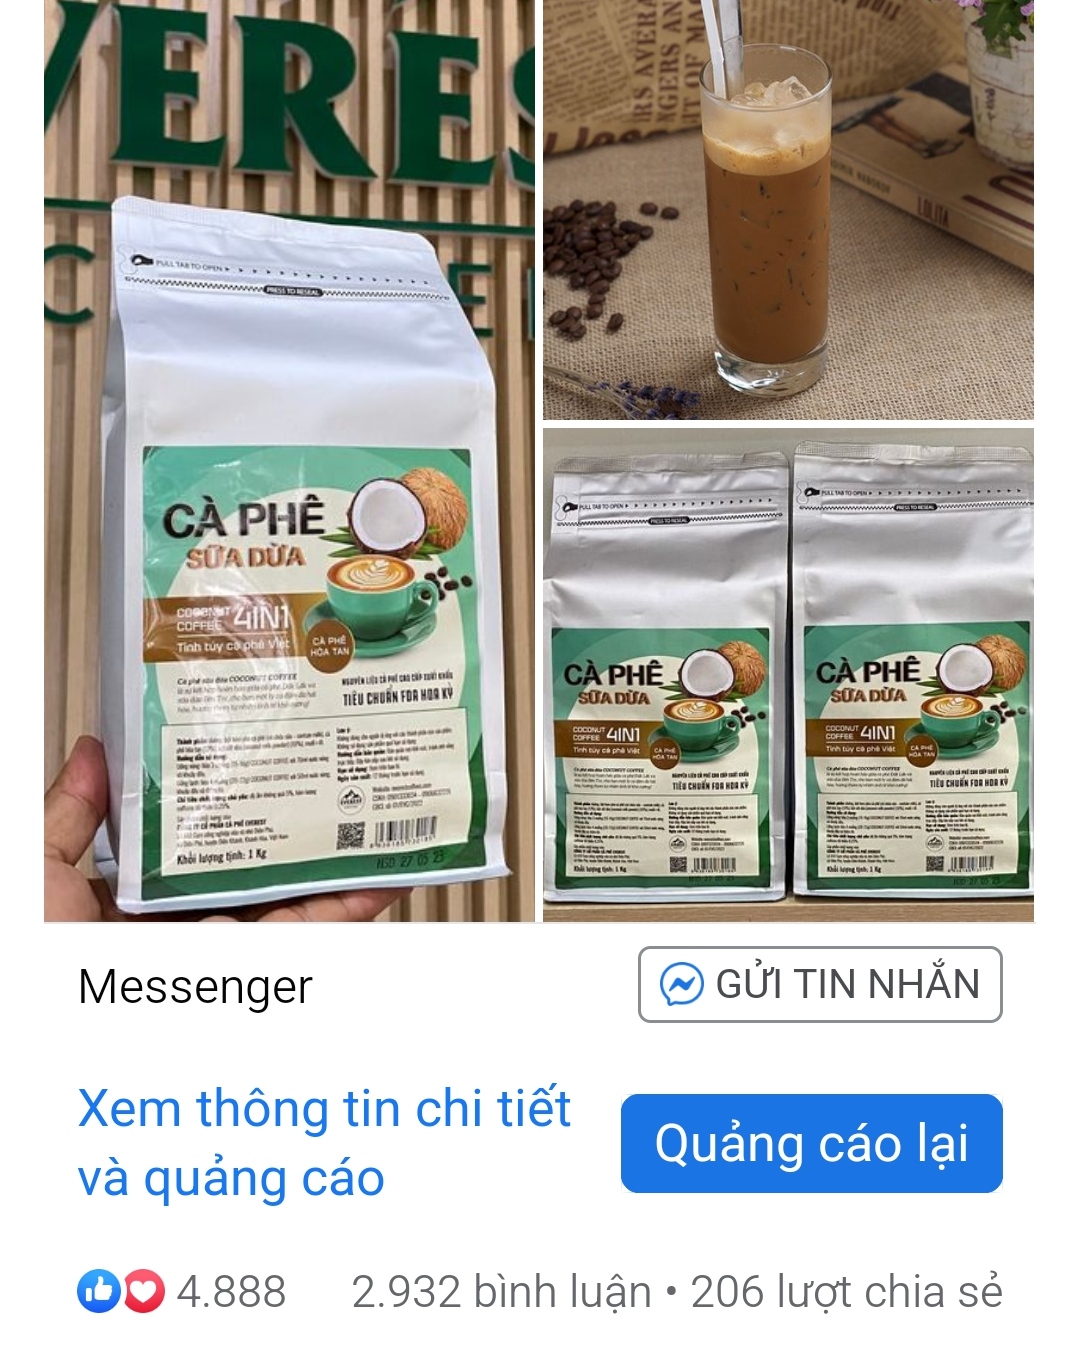 (Hộp 18 gói) Cà Phê Sữa Dừa 4in1 EVEREST COFFEES .Tiêu Chuẩn FDA Hoa Kỳ. Hàng Việt Nam Chất Lượng Xuất Khẩu Mỹ